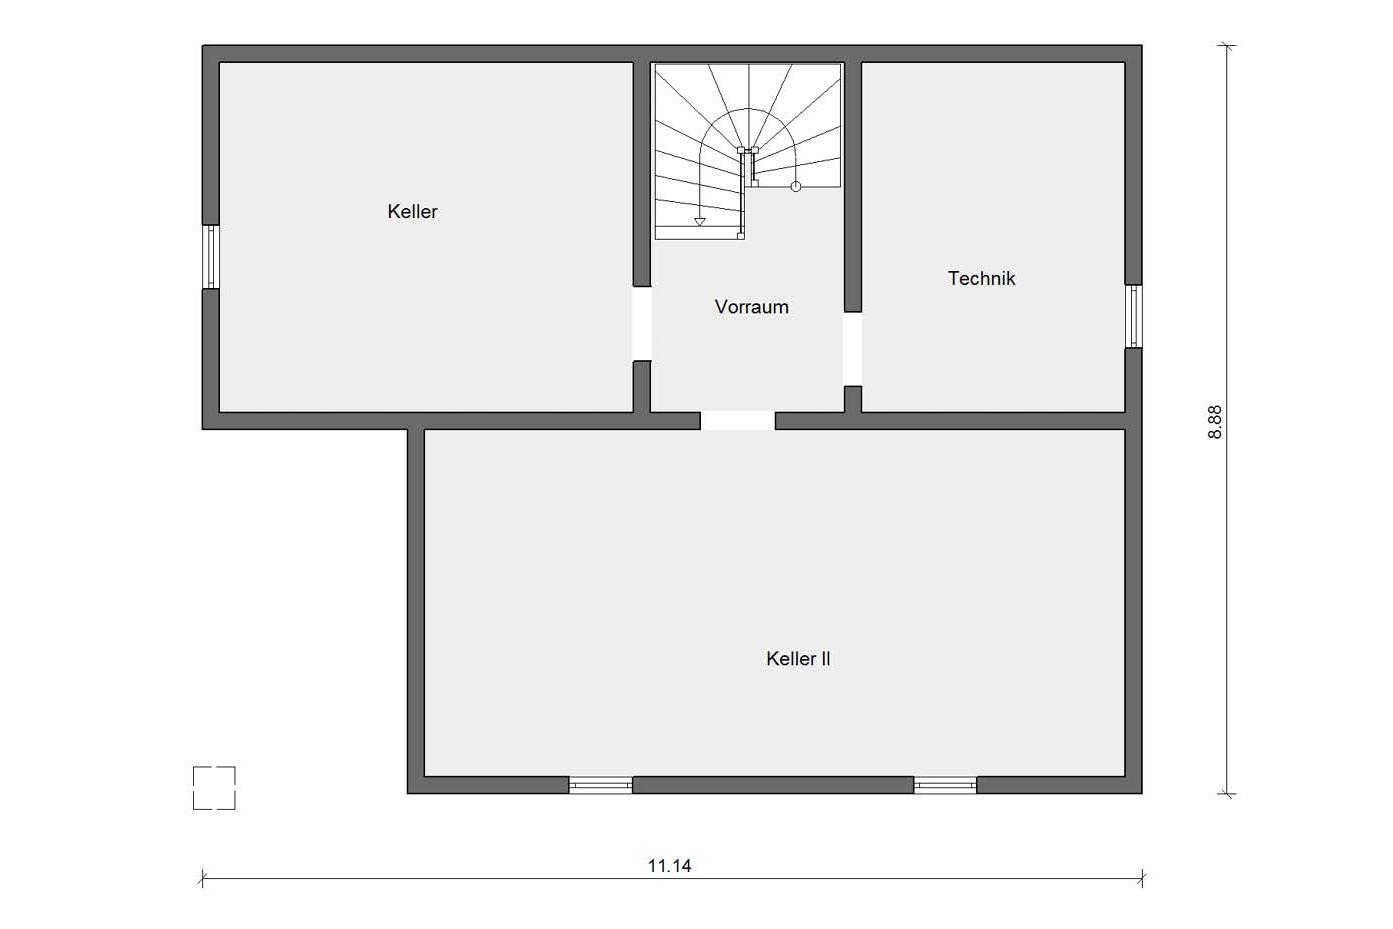 Floor plan basement